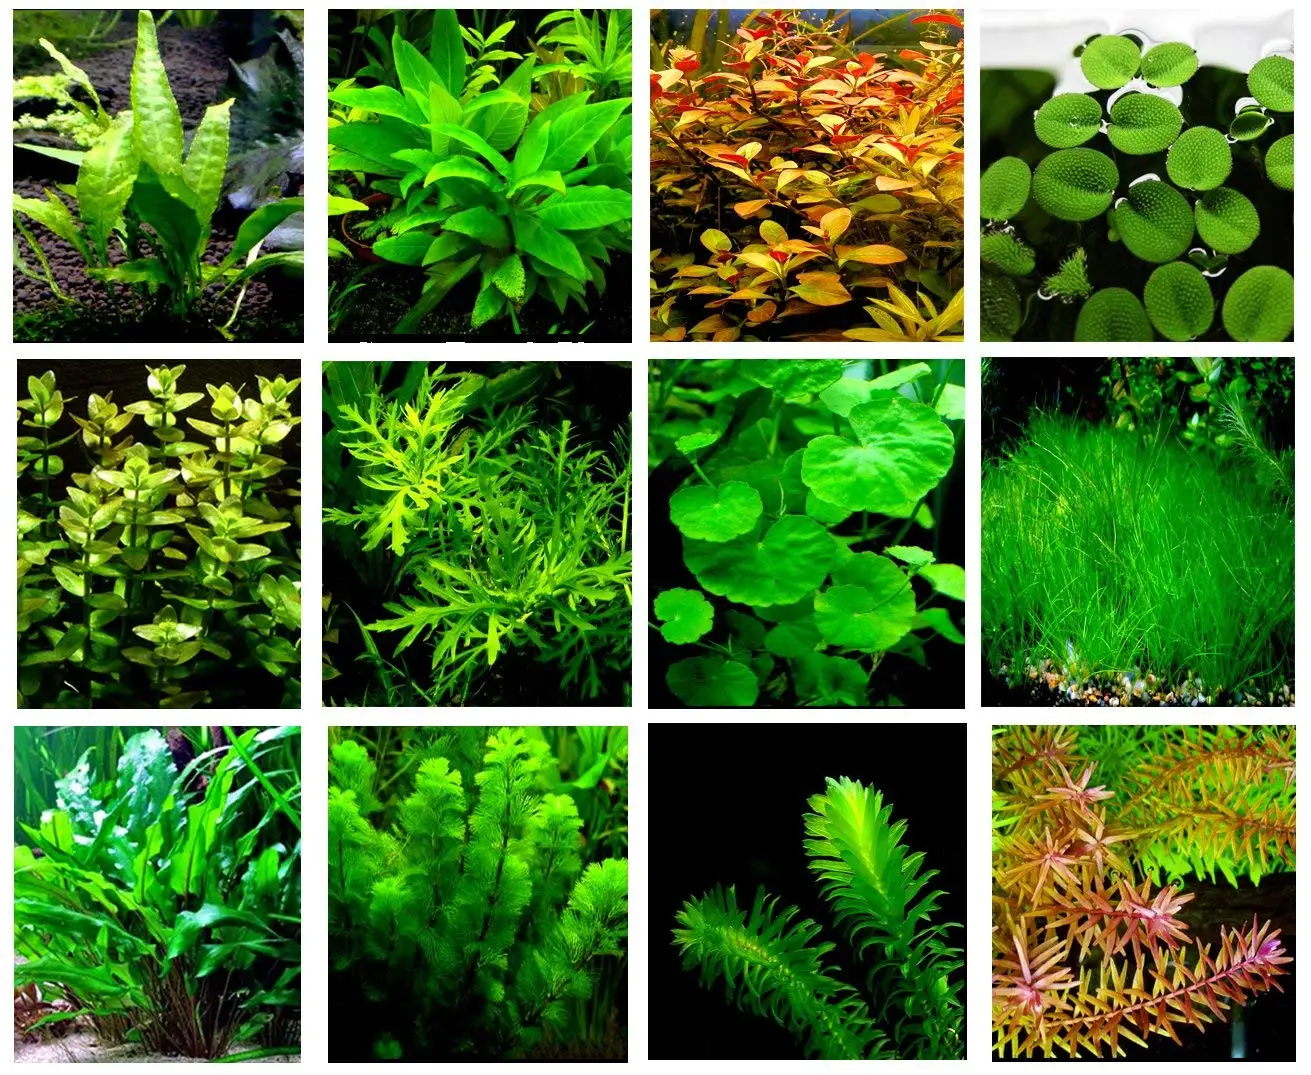 аквариумные растения каталог с фотографиями и названиями